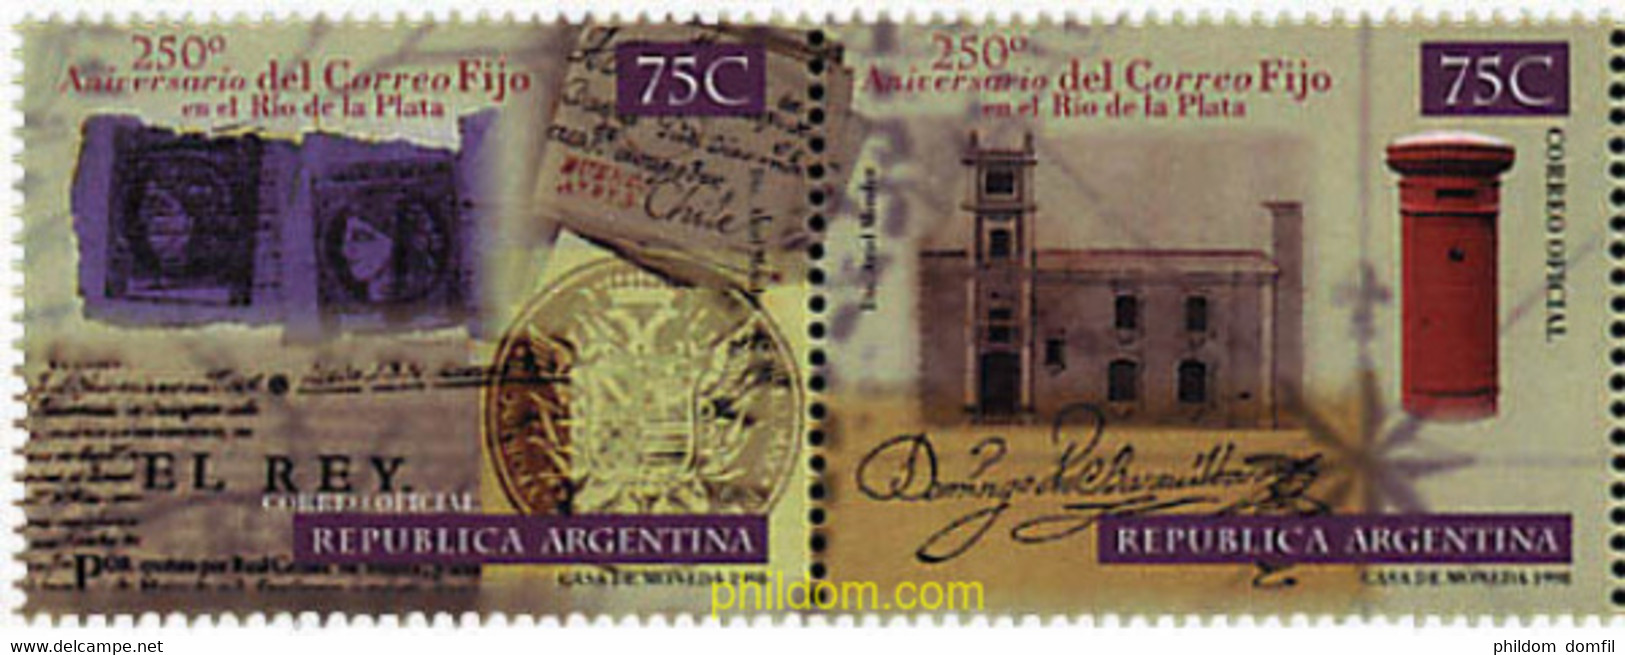 6940 MNH ARGENTINA 1998 250 ANIVERSARIO DEL "CORREO FIJO" EN RIO DE LA PLATA - Usados